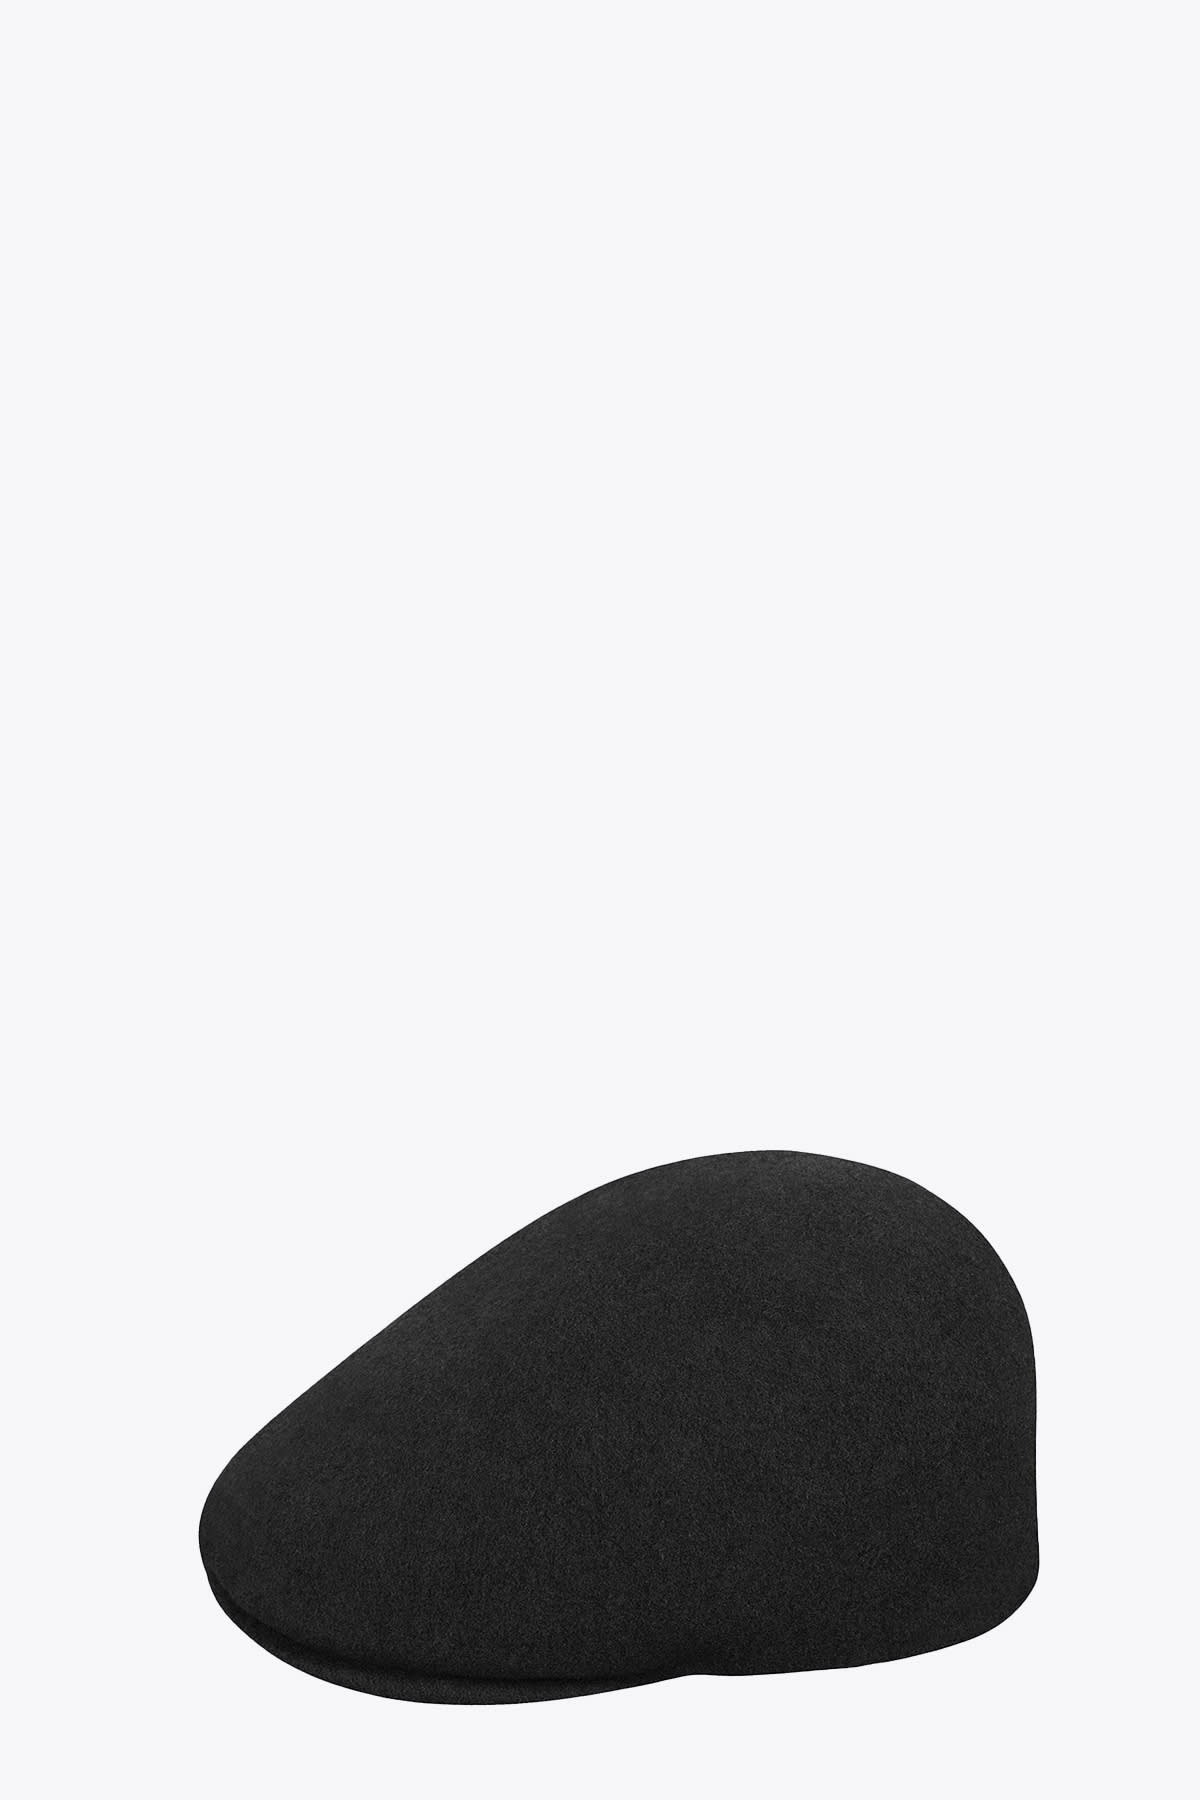 Kangol Seamless Wool Black wool flat cap with logo